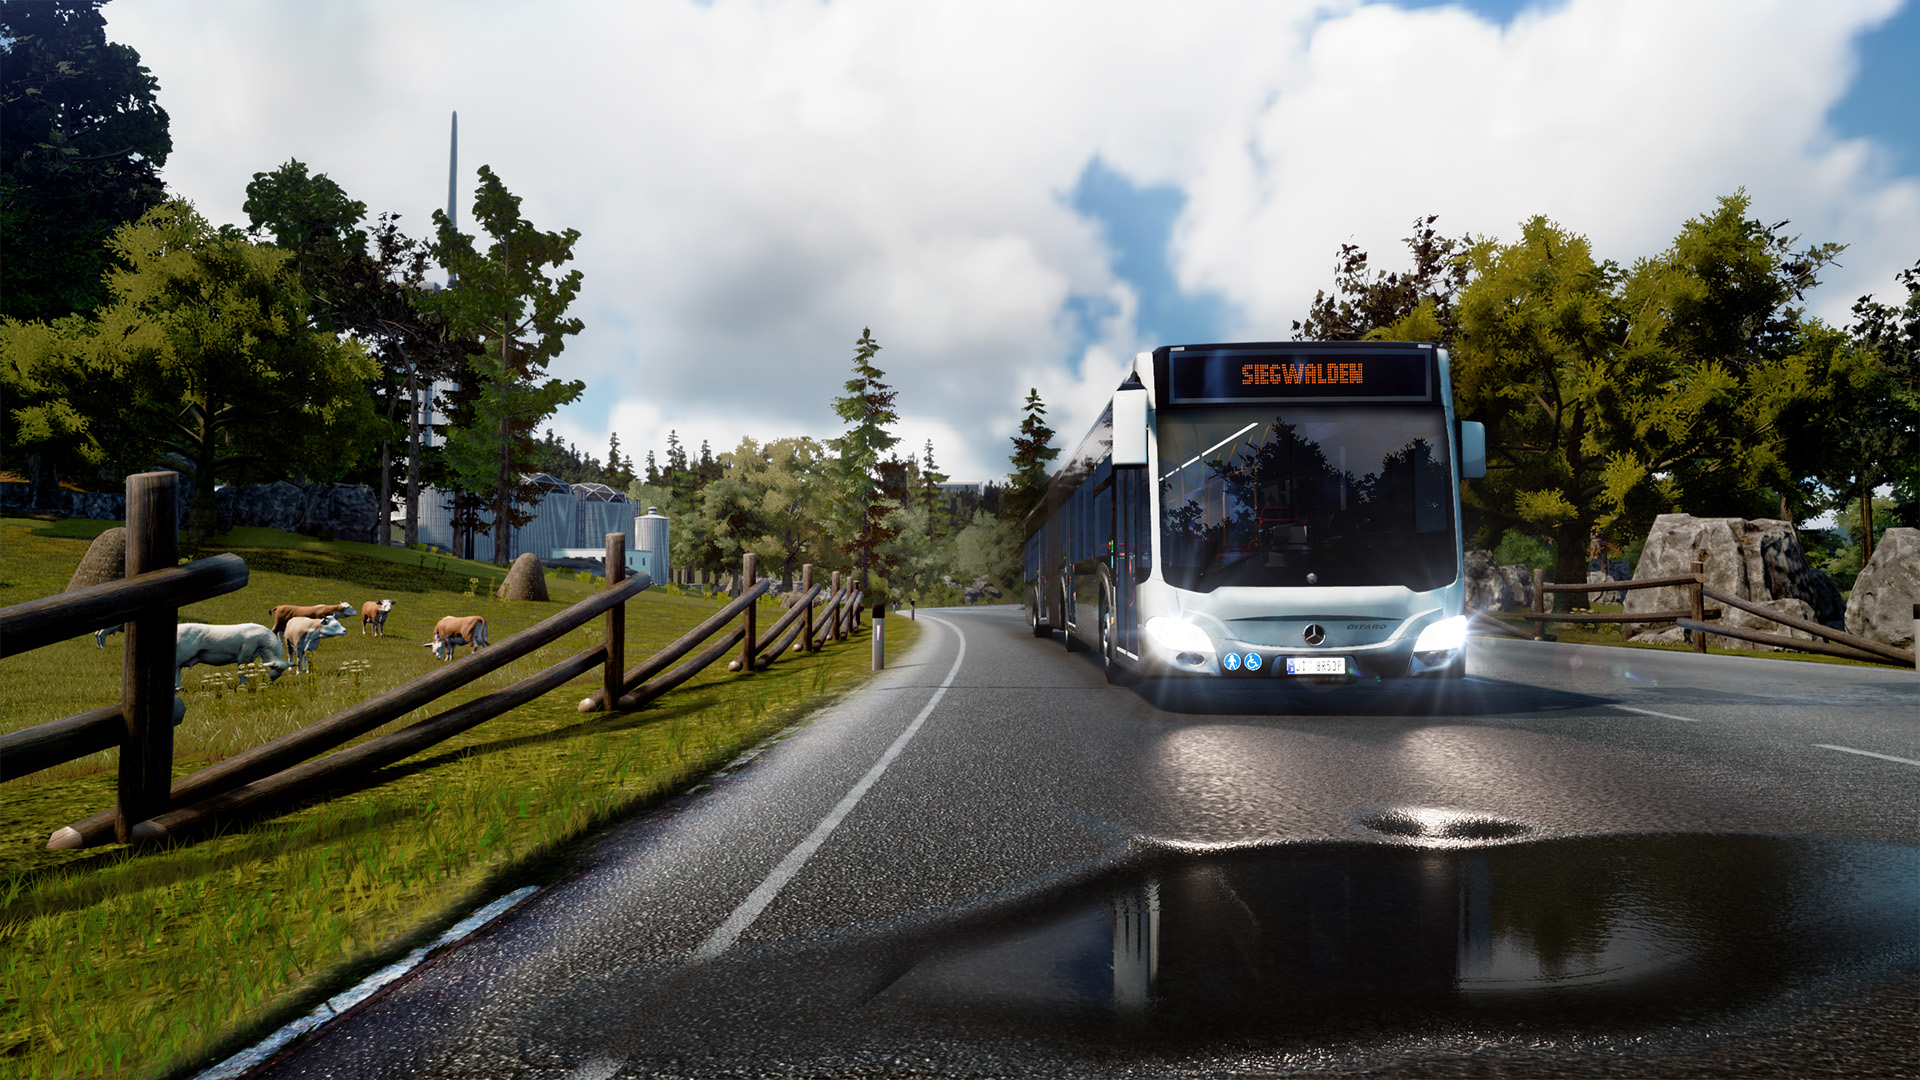 Bus Simulator Review Godisageek Com